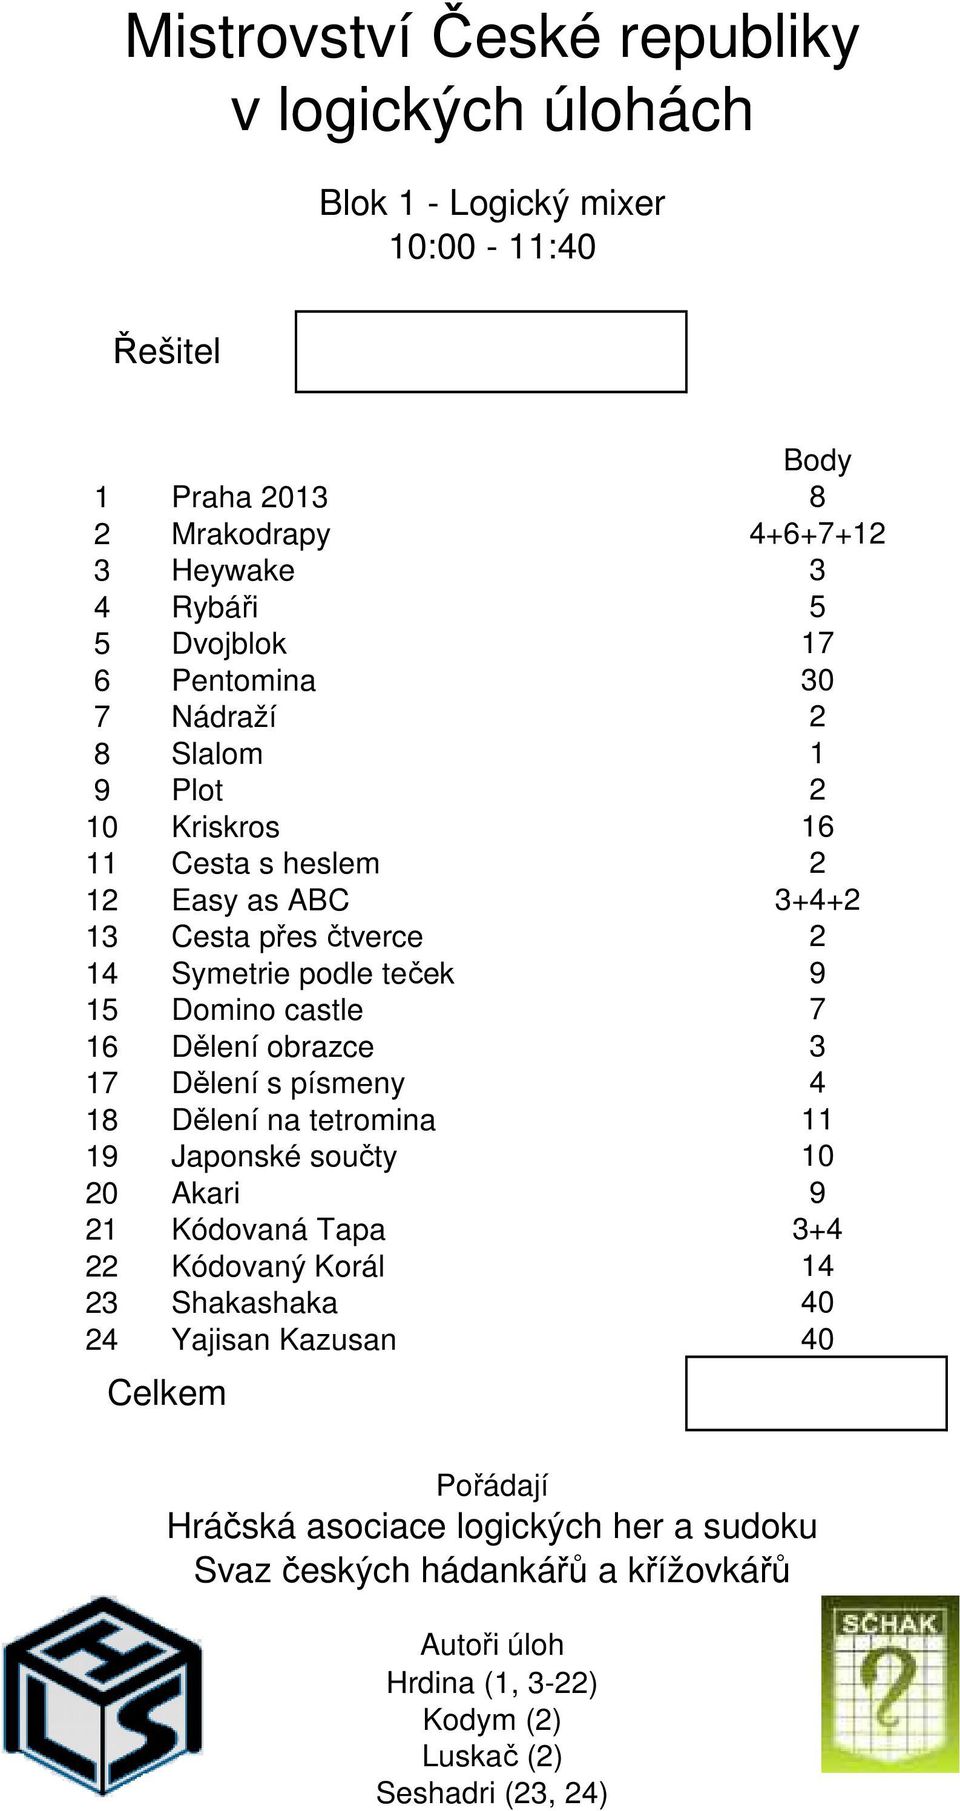 písmeny 18 Dělení na tetromina 19 Japonské součty 0 kari 1 Kódovaná Tapa Kódovaný Korál 3 Shakashaka 4 Yajisan Kazusan Celkem Body 8 4++7+1 3 5 17 30 1 1 3+4+ 9